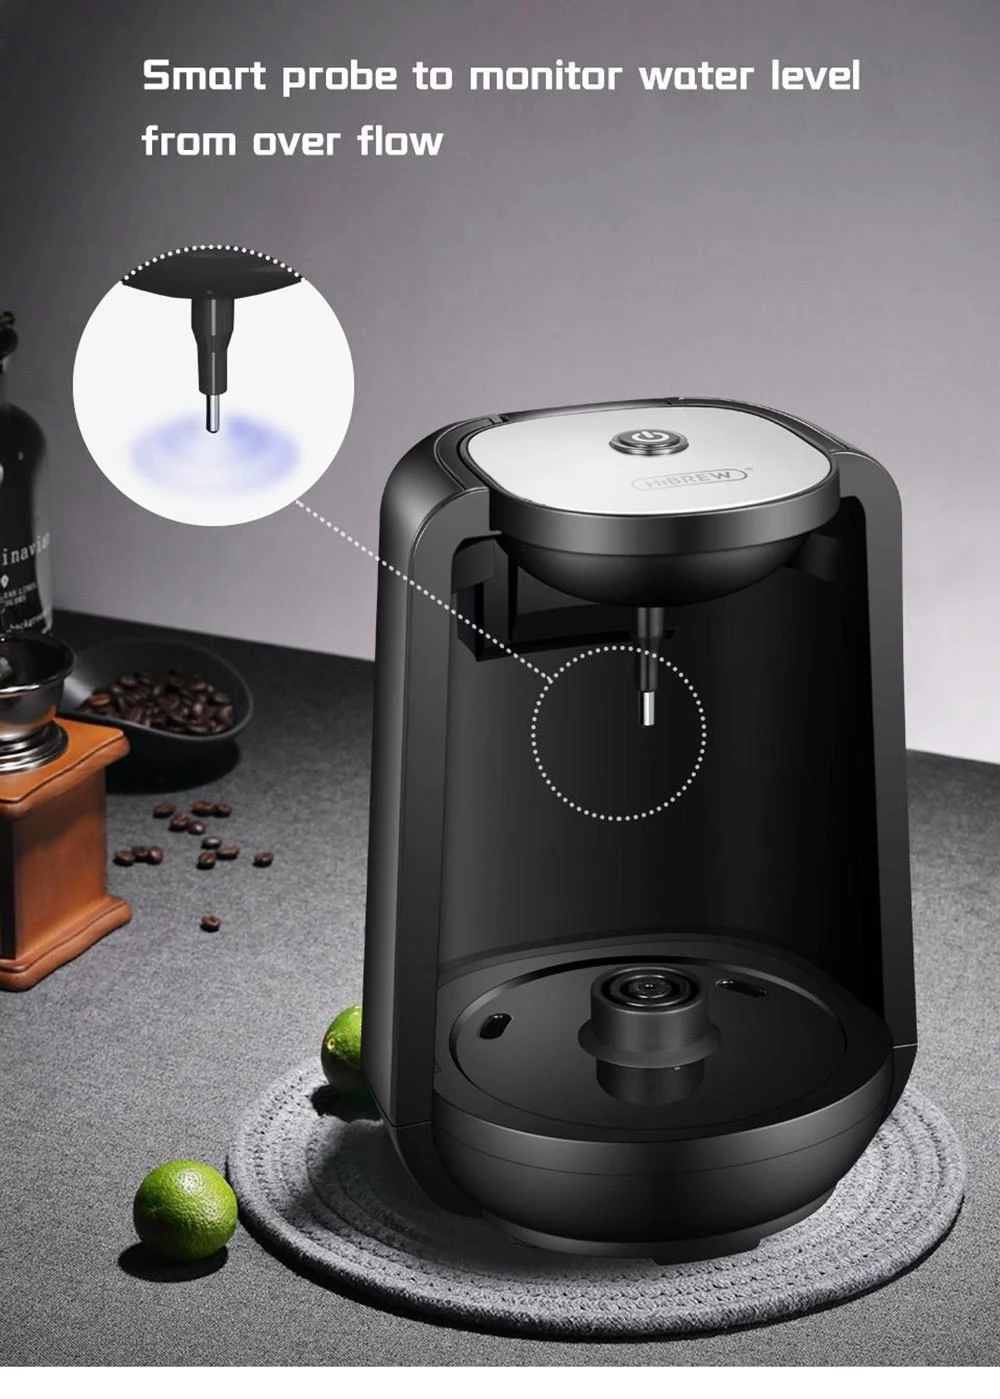 HiBREW H9 480W automatische türkische Kaffeemaschine mit LED Anzeige, 250 ml elektrische Kanne